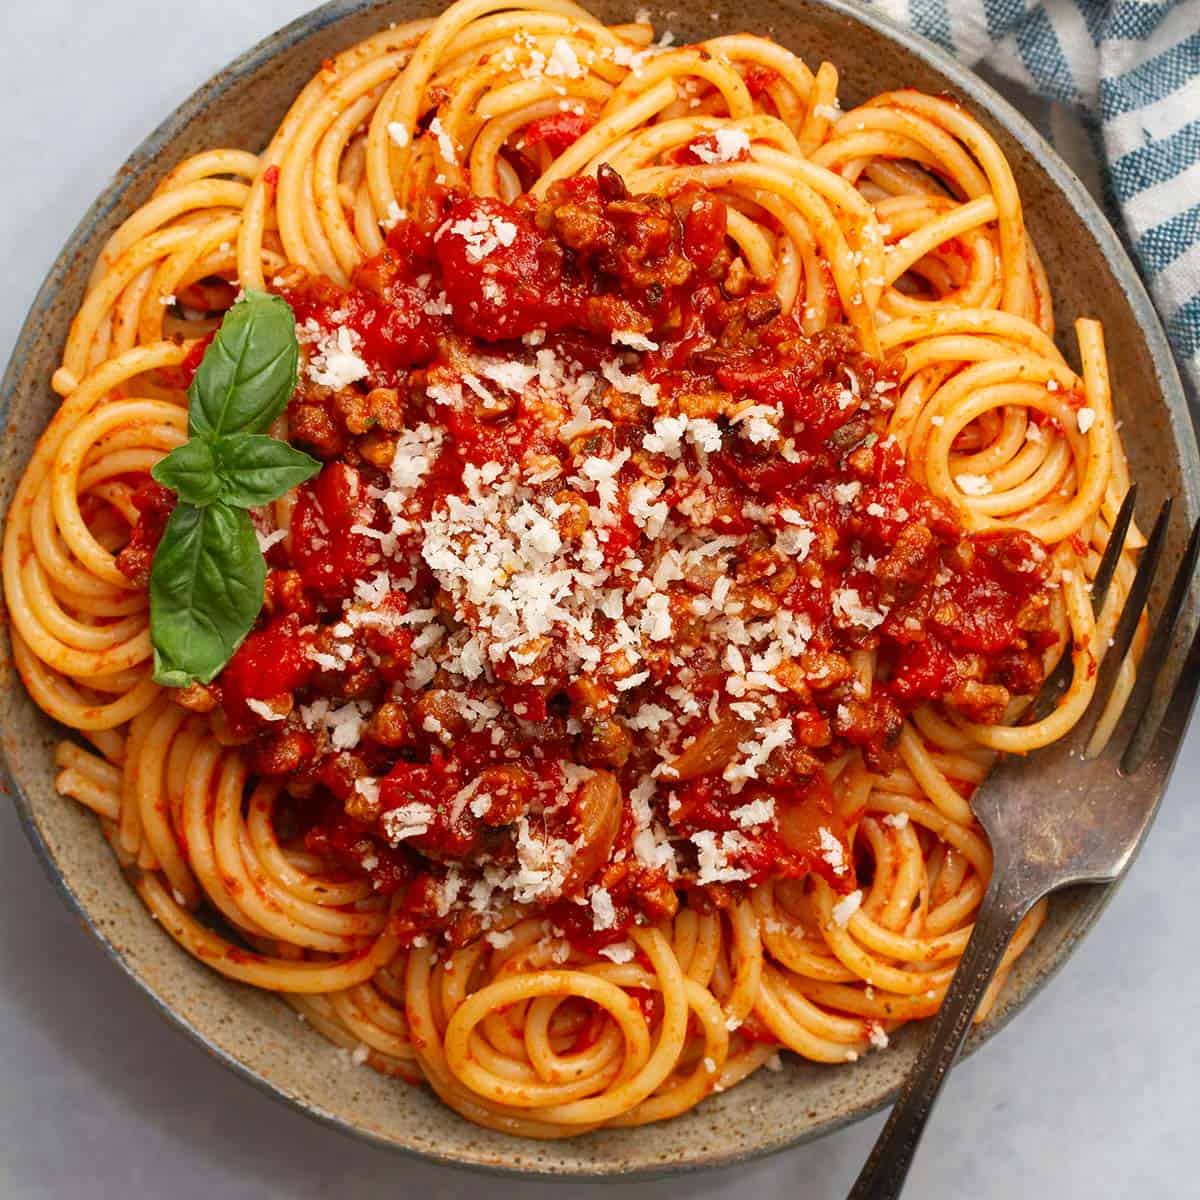 The Culinary Delight of Spaghetti